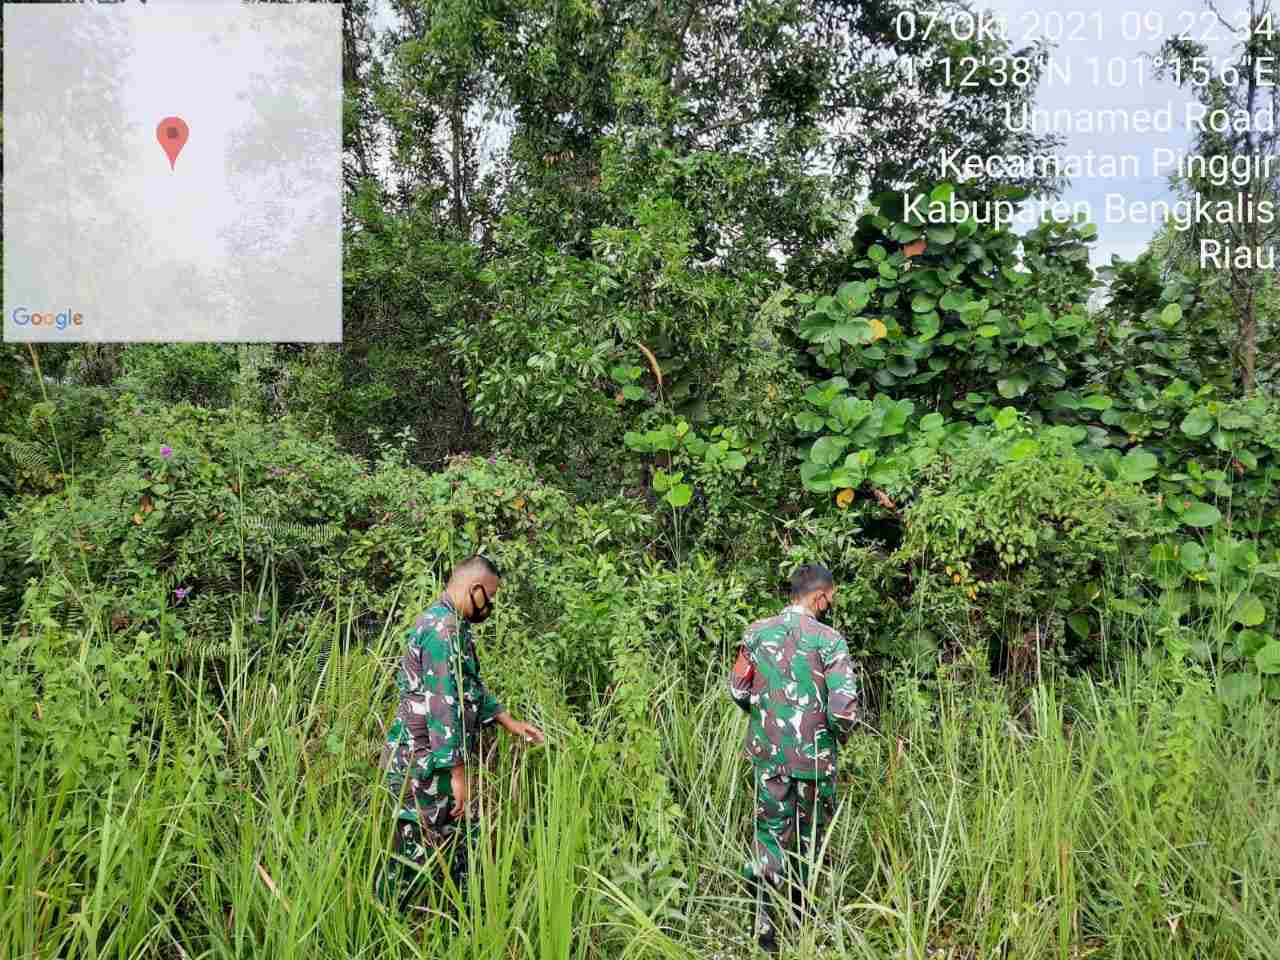 Serma Suprapto Patroli Karhutla di Desa Pinggir Kecamatan Pinggir